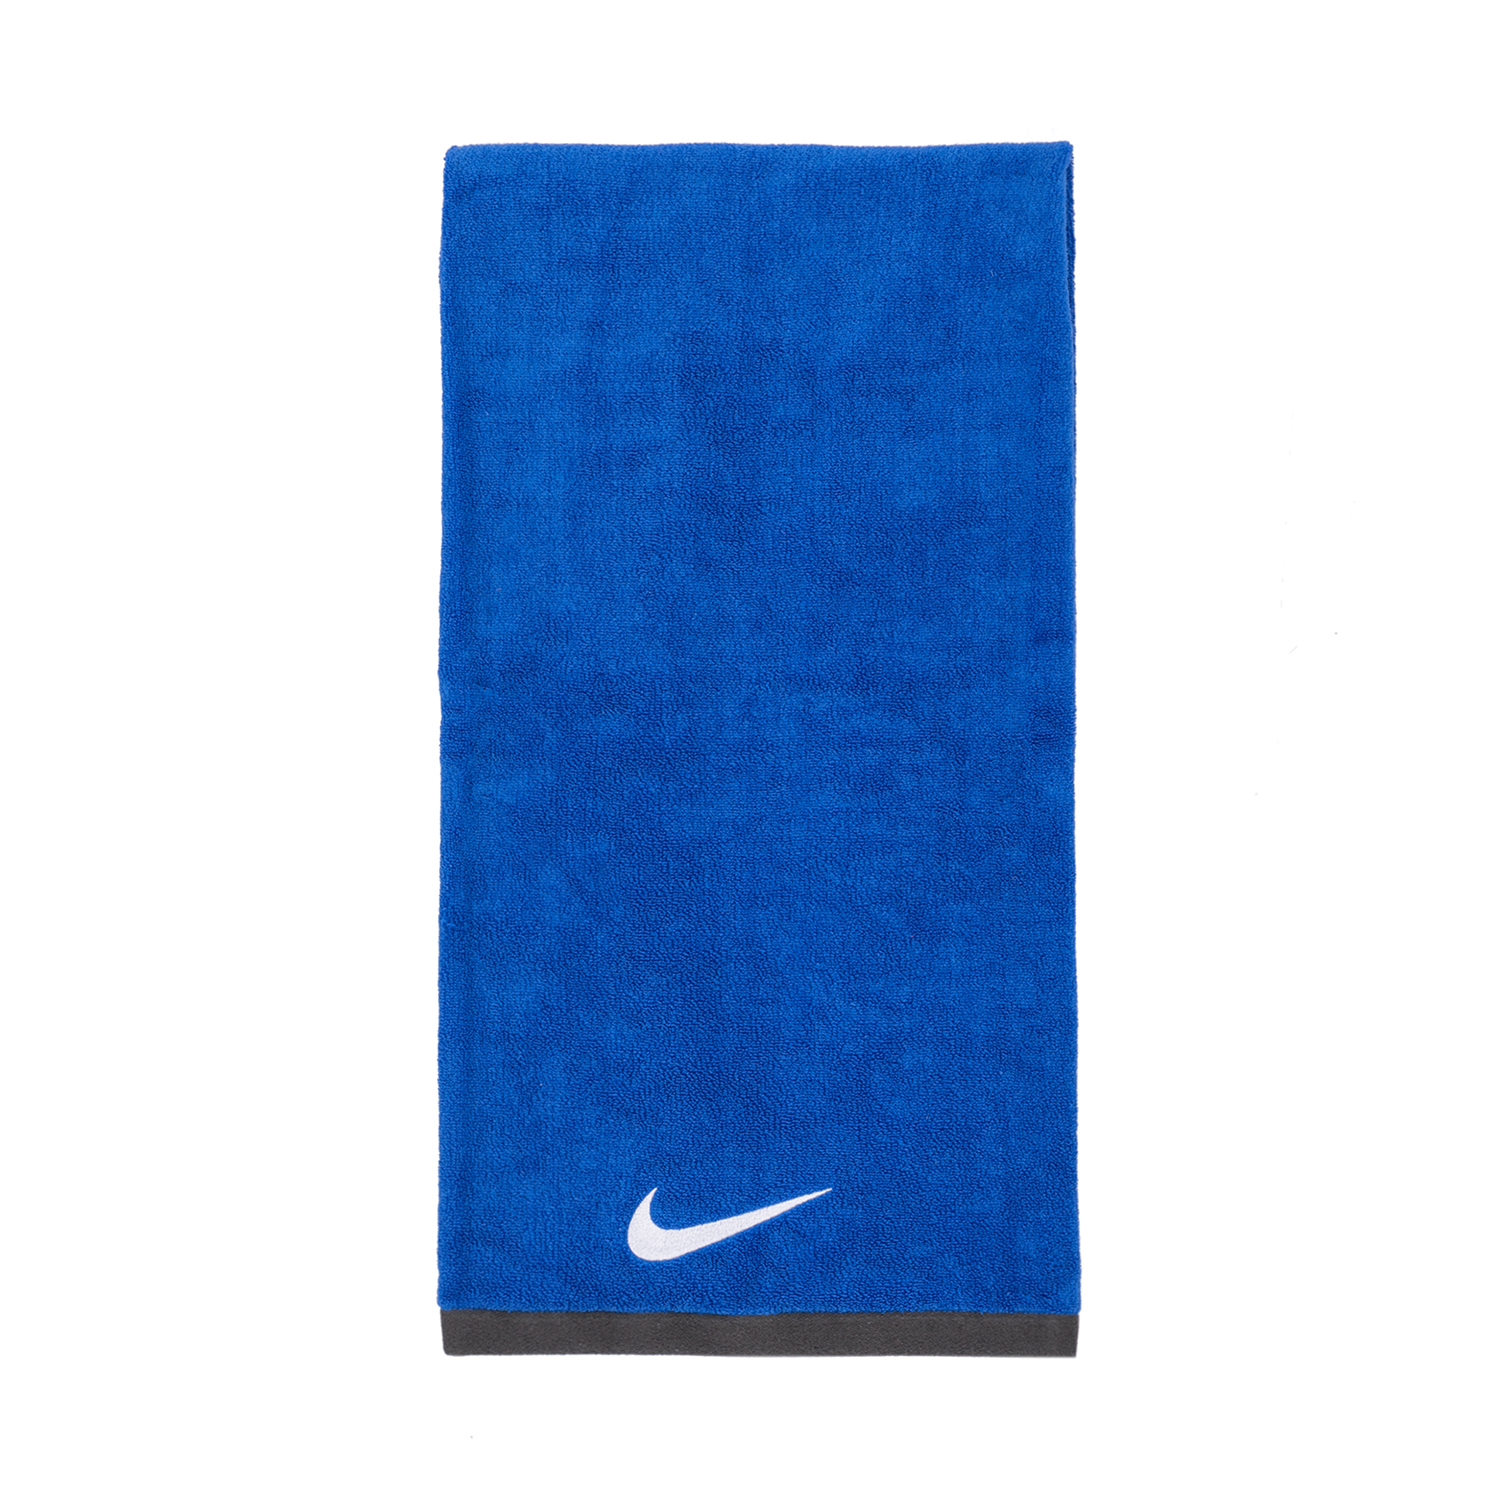 Ανδρικά/Αξεσουάρ/Πετσέτες NIKE - Πετσέτα NIKE μπλε 1,20 x 62 εκ.